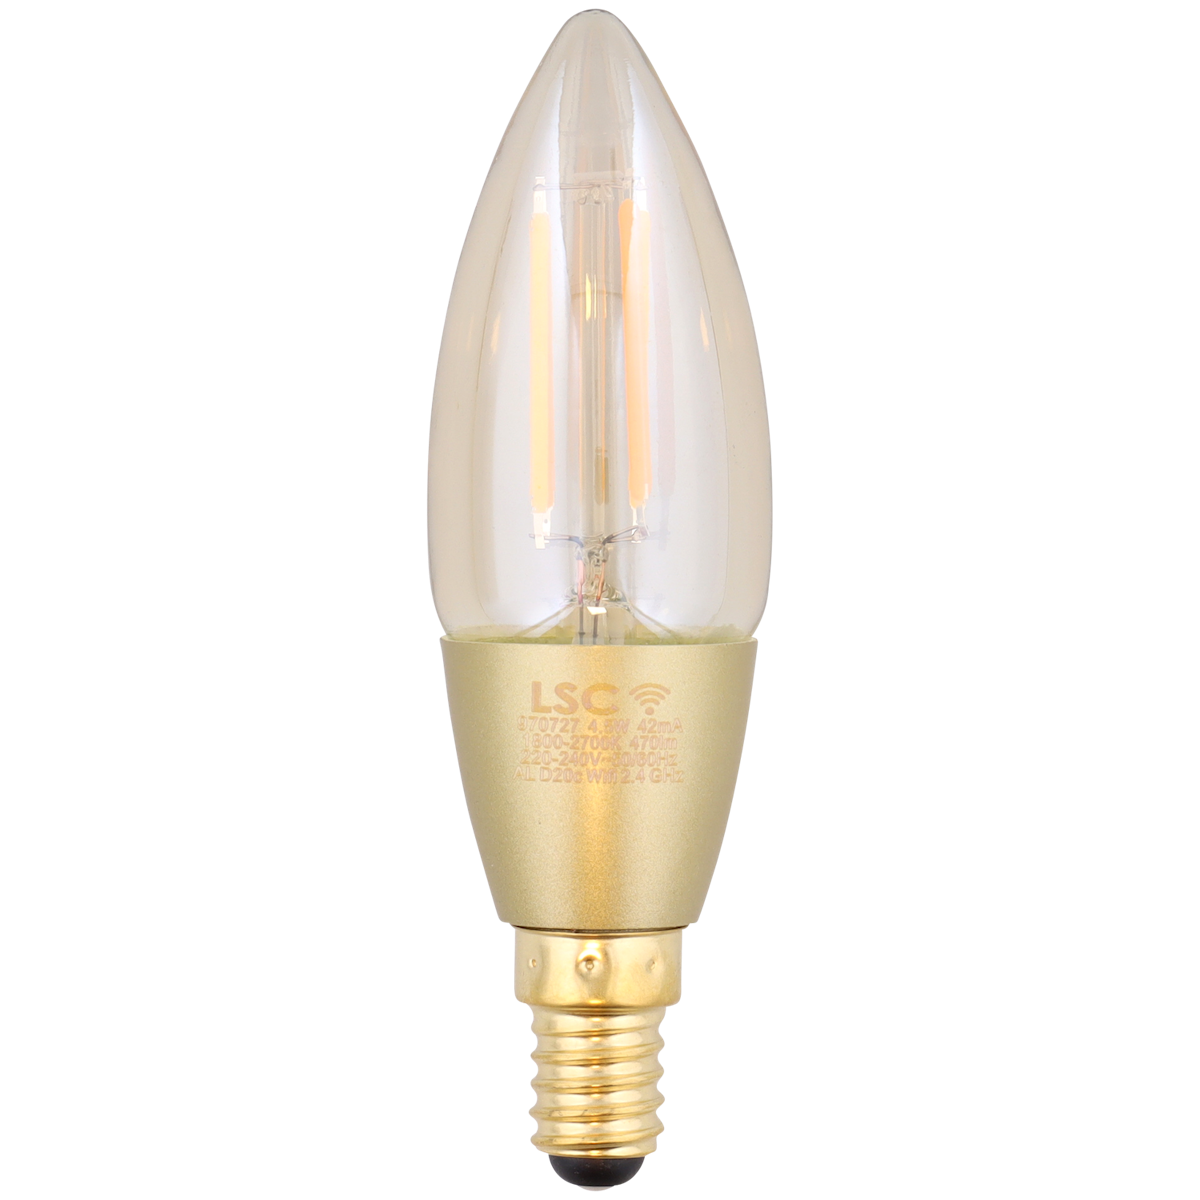 Ampoule bougie LED à filament intelligente LSC Smart Connect